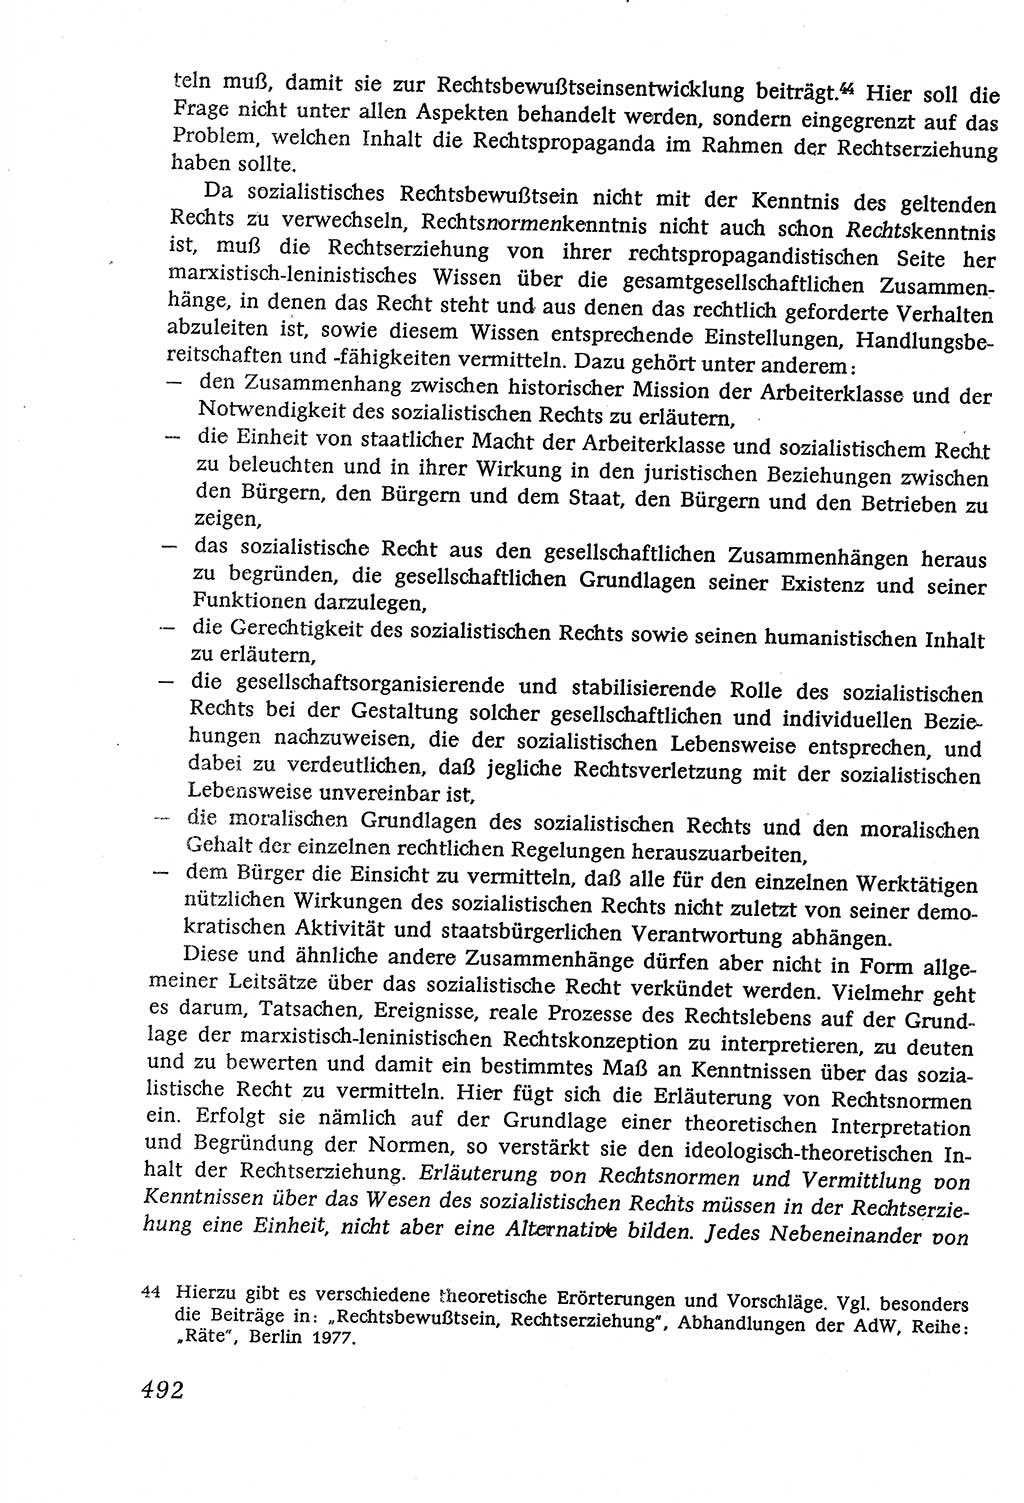 Marxistisch-leninistische (ML) Staats- und Rechtstheorie [Deutsche Demokratische Republik (DDR)], Lehrbuch 1980, Seite 492 (ML St.-R.-Th. DDR Lb. 1980, S. 492)